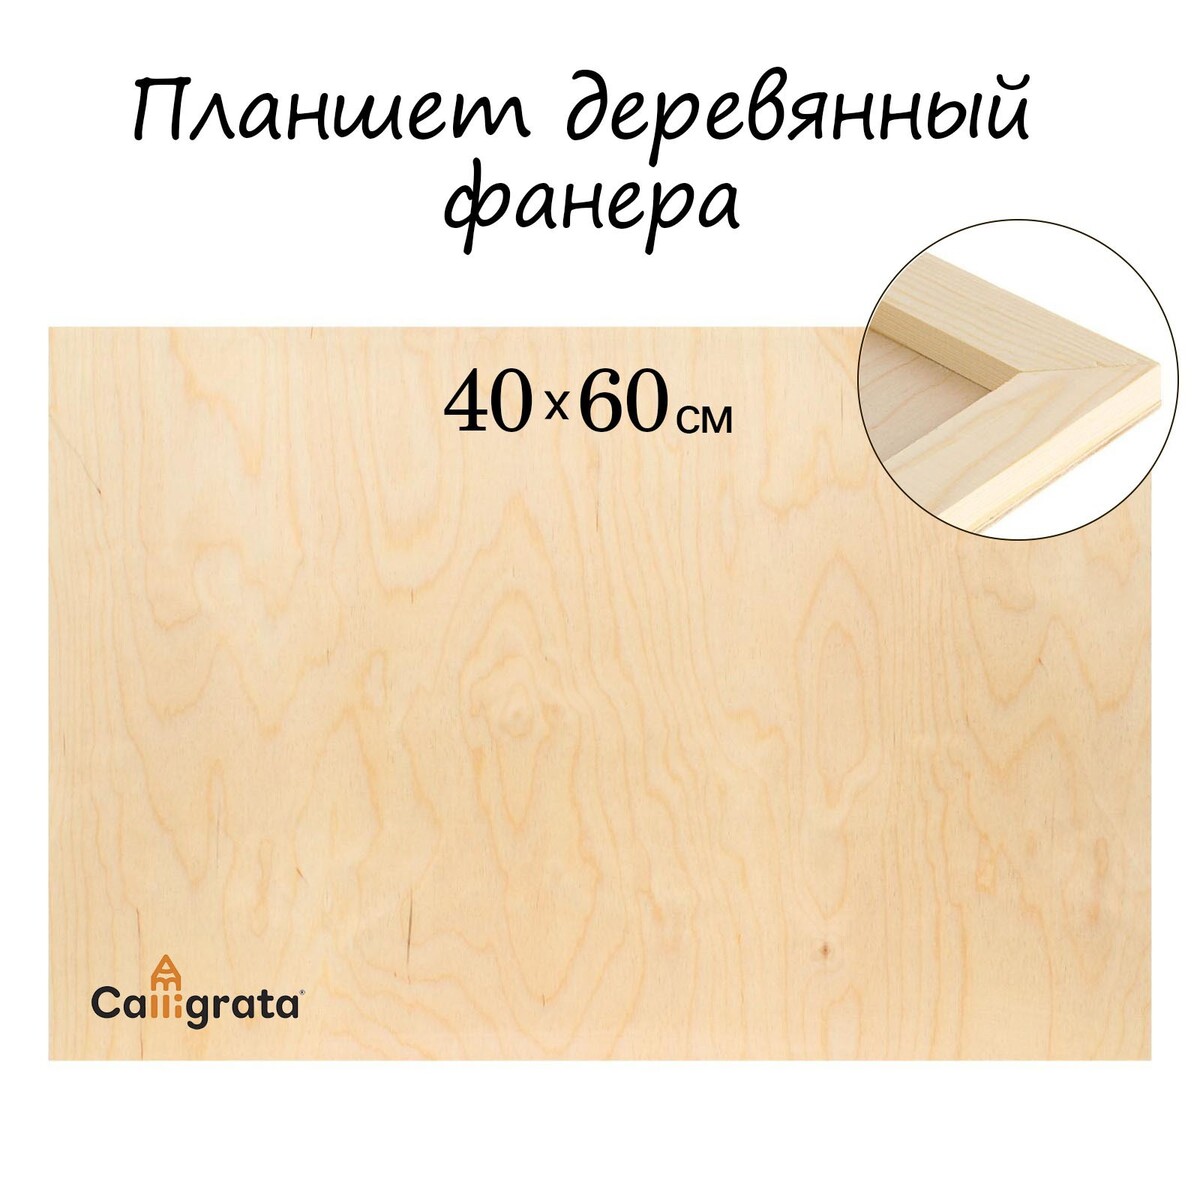 Планшет деревянный 40 х 60 х 2 см, фанера (для рисования эпоксидной смолой) планшет деревянный 30 х 40 х 2 см двп